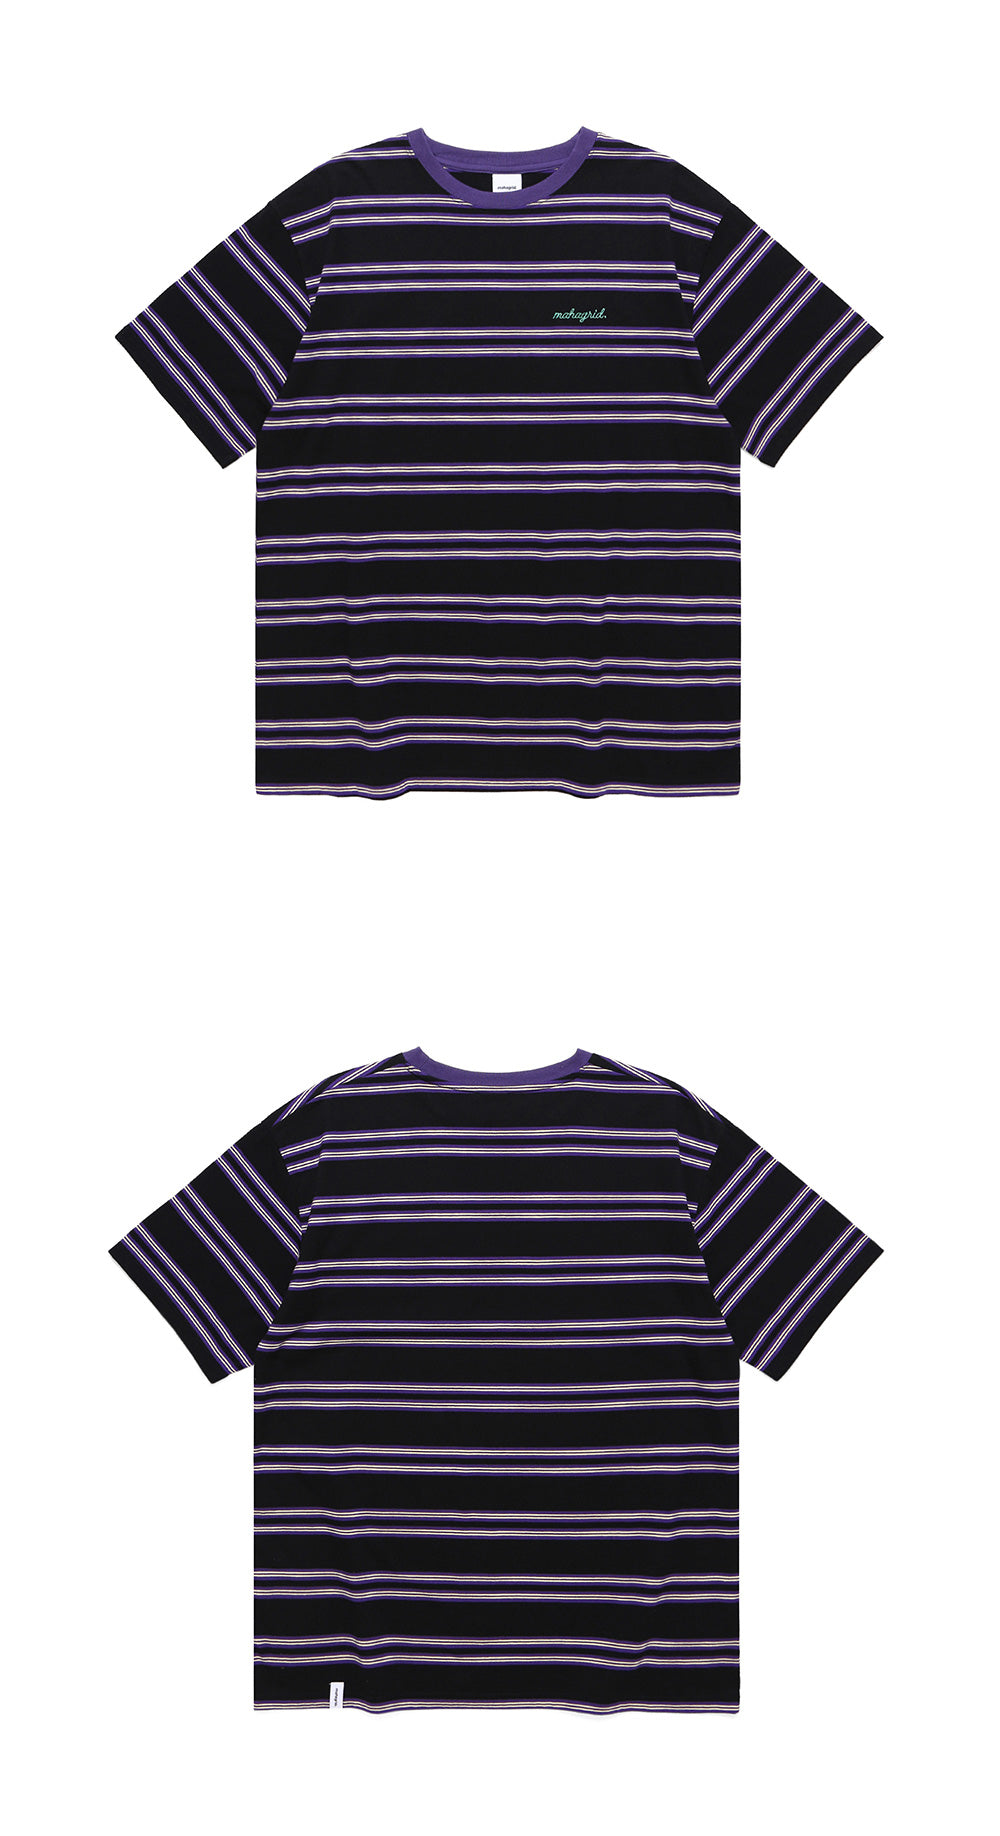 Mahagrid x Stray Kids Logo Striped Tee